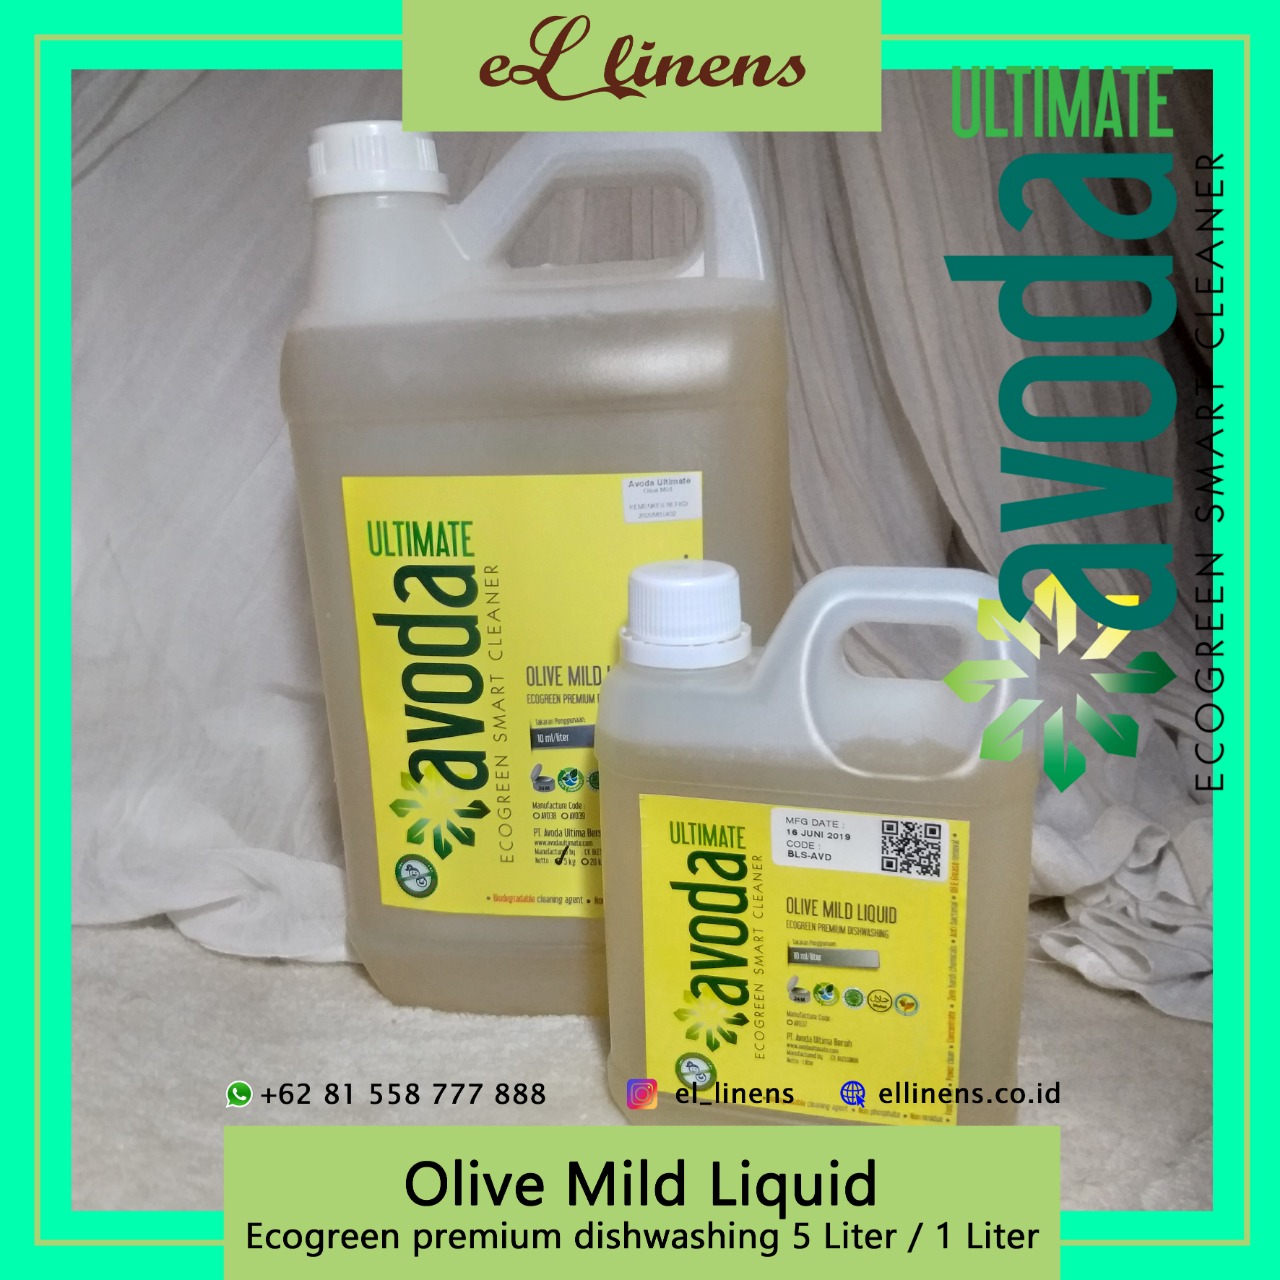 Olive Mild Liquid